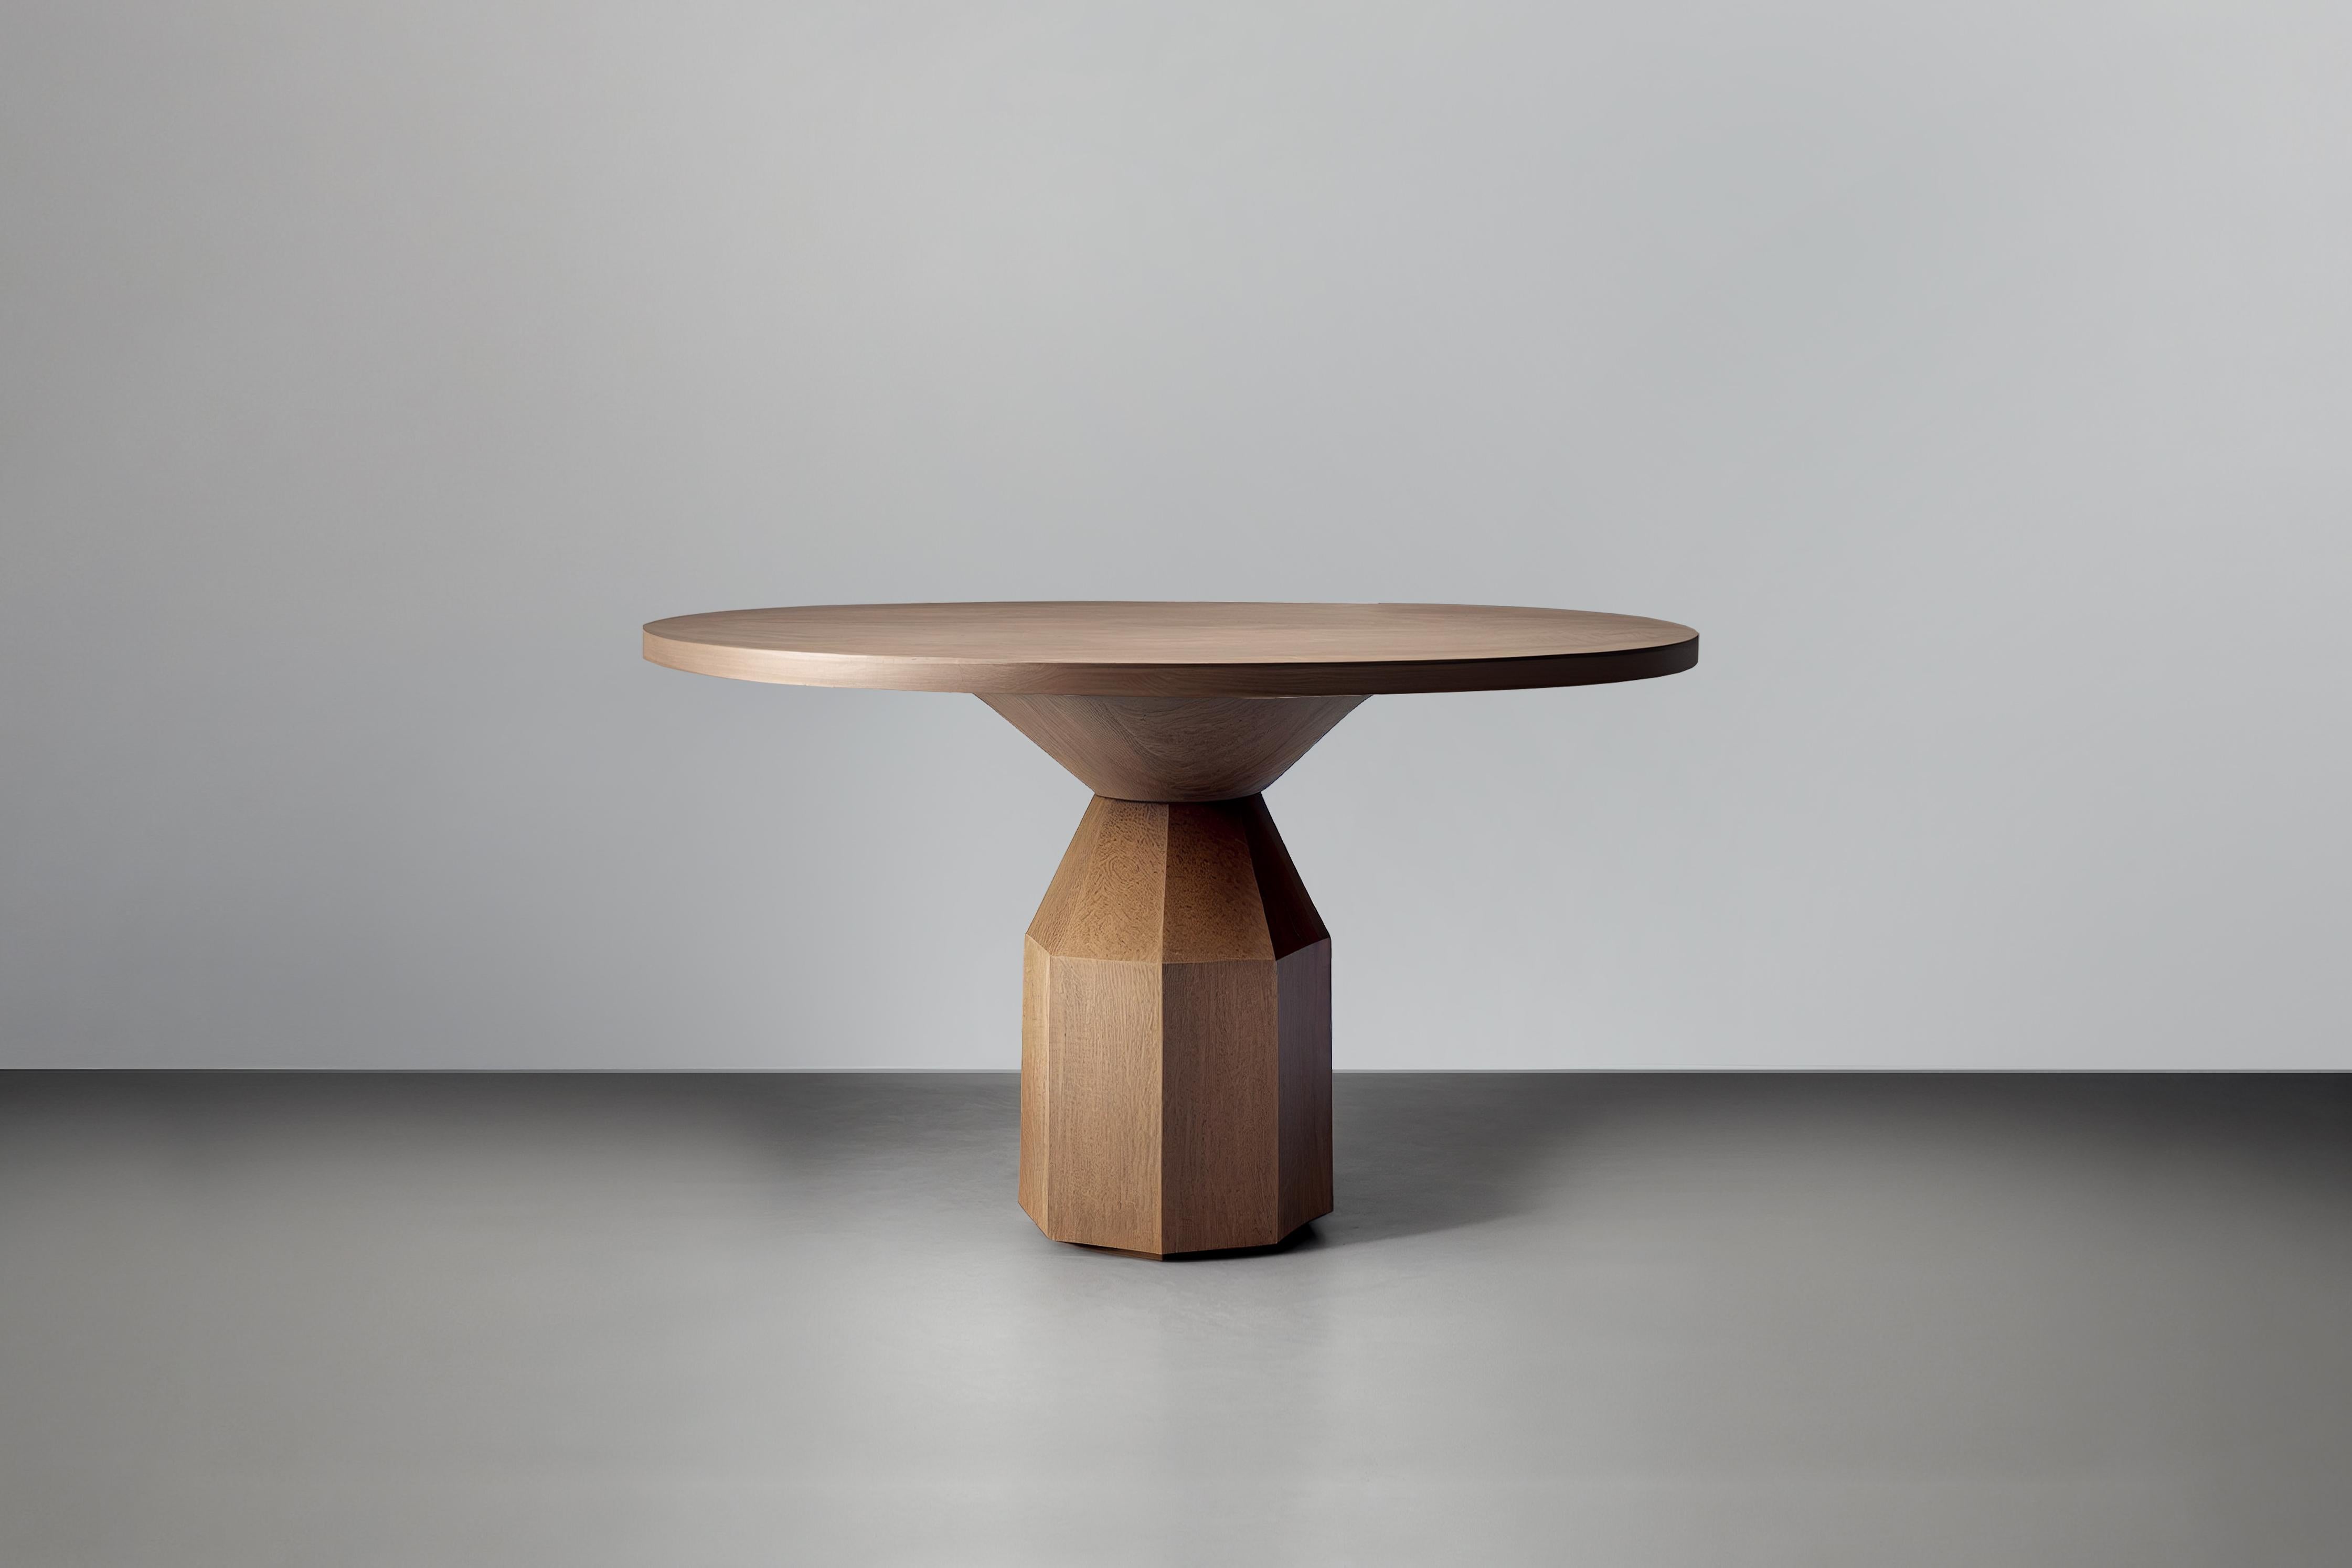 Moka Esstisch, Runder Tisch für vier Personen von NONO 

Der Moka Dining Table ist eine skulpturale Esstisch-Kollektion, die von der kultigen italienischen Mokkakanne inspiriert ist. Die aus Massivholz gefertigten, zeitgenössischen Formen sind ein